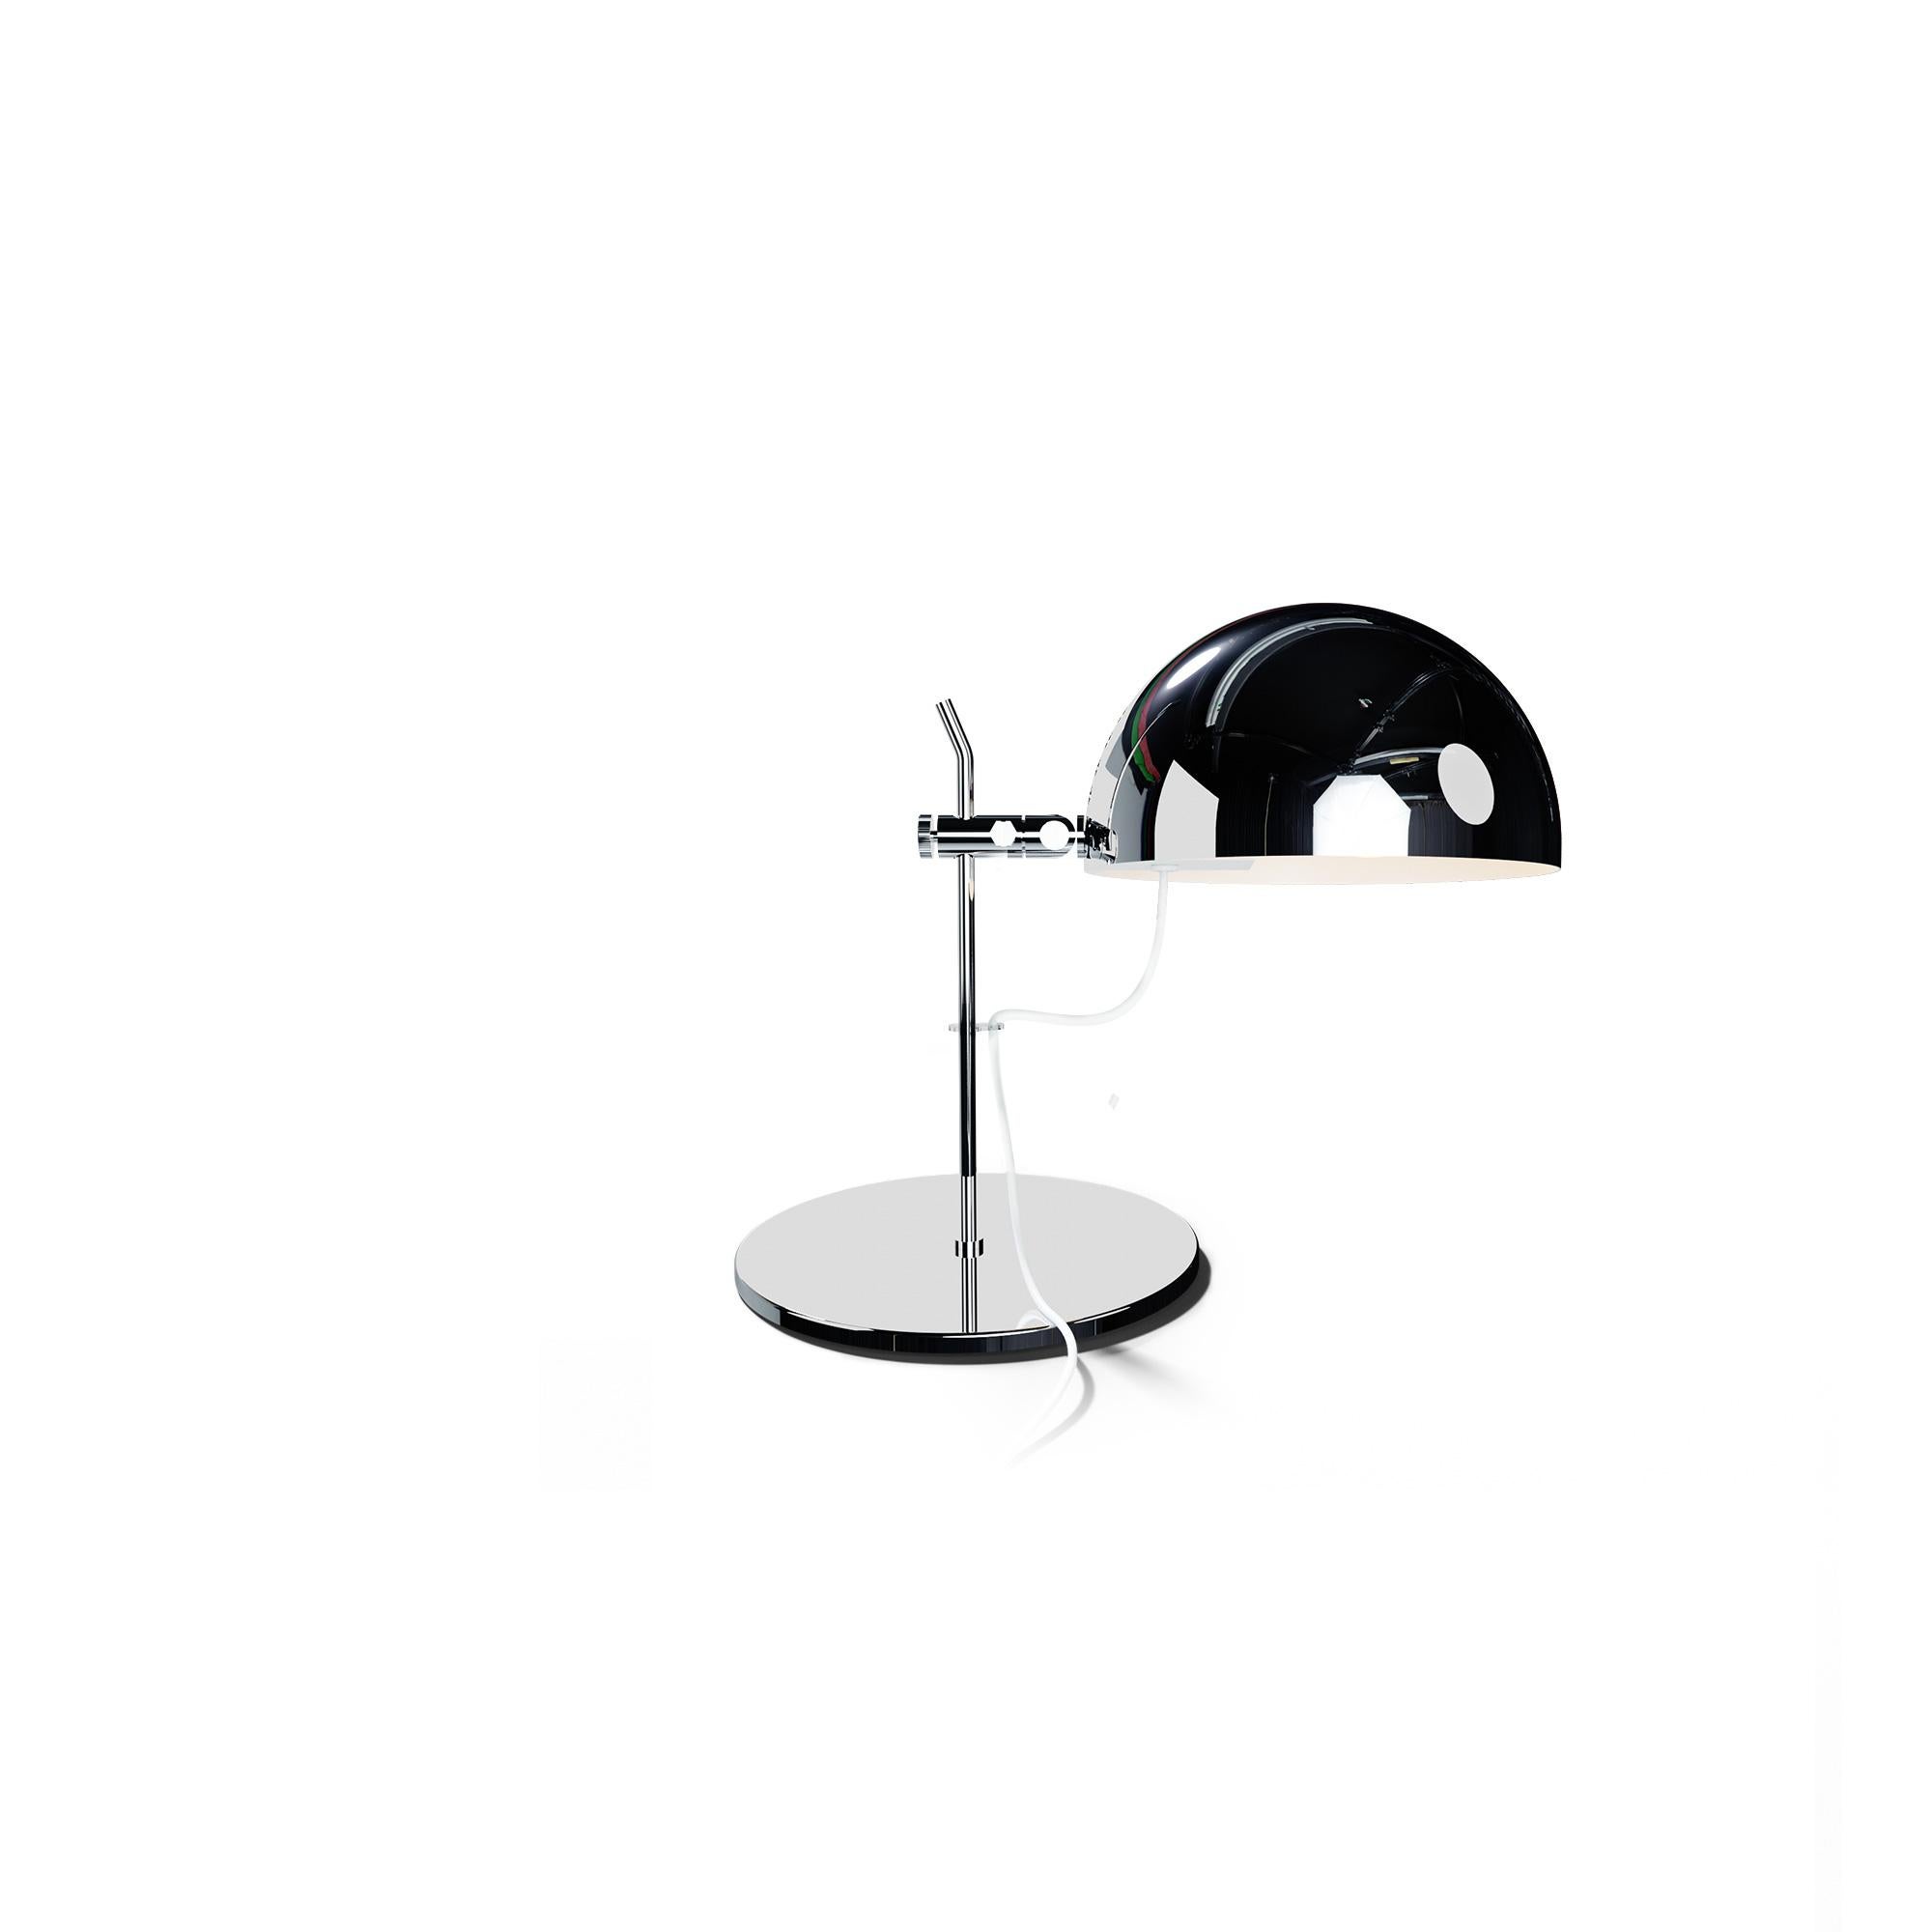 Alain Richard 'A22' Desk Lamp in Black for Disderot For Sale 5